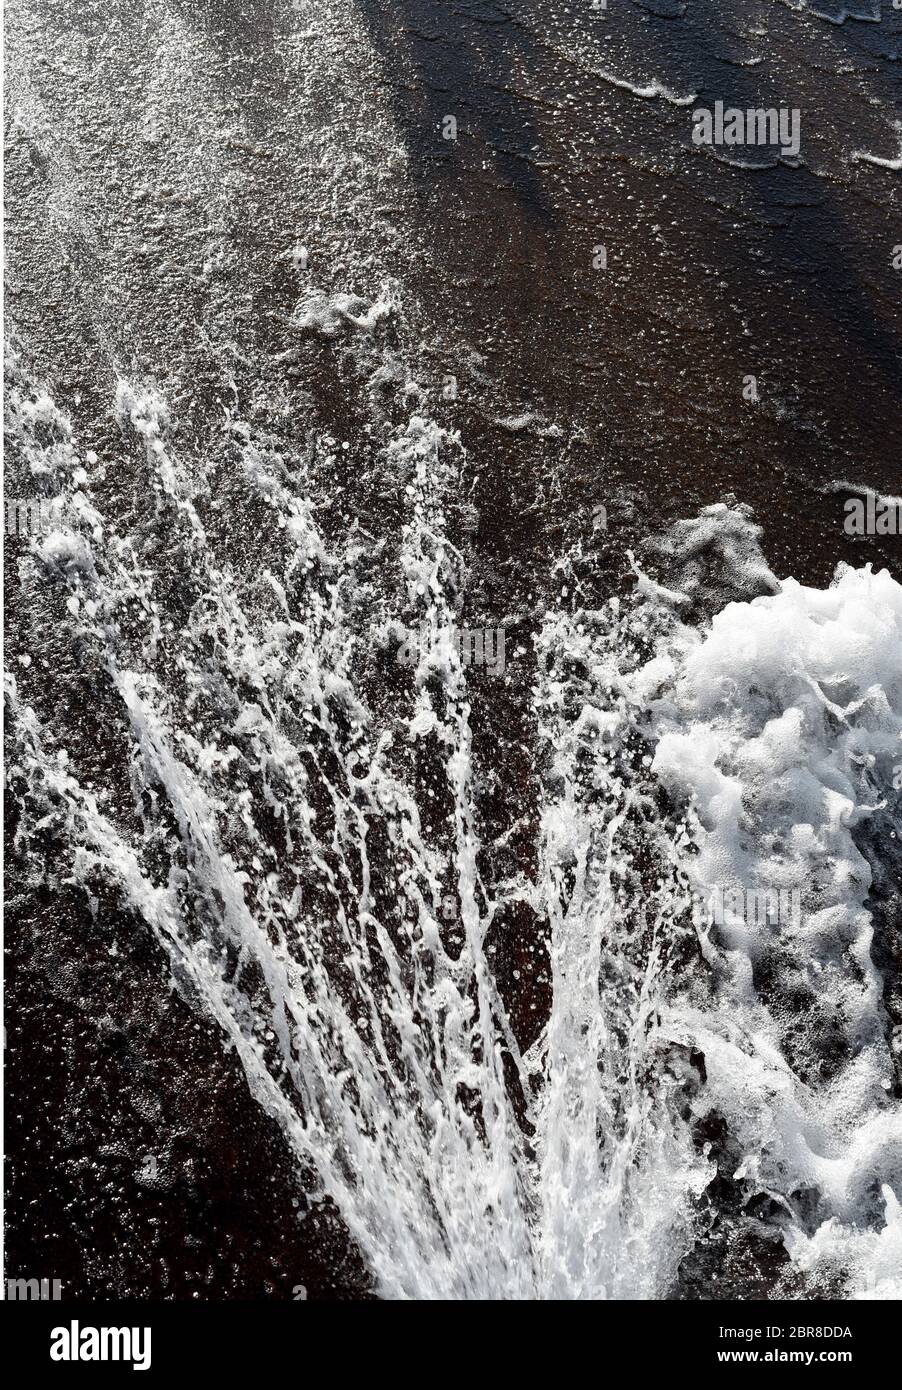 Chorros de agua pulverizada y burbuja contra una superficie de metal en una fuente en la ciudad de Quebec, en la provincia de Quebec, Canadá. Foto de stock